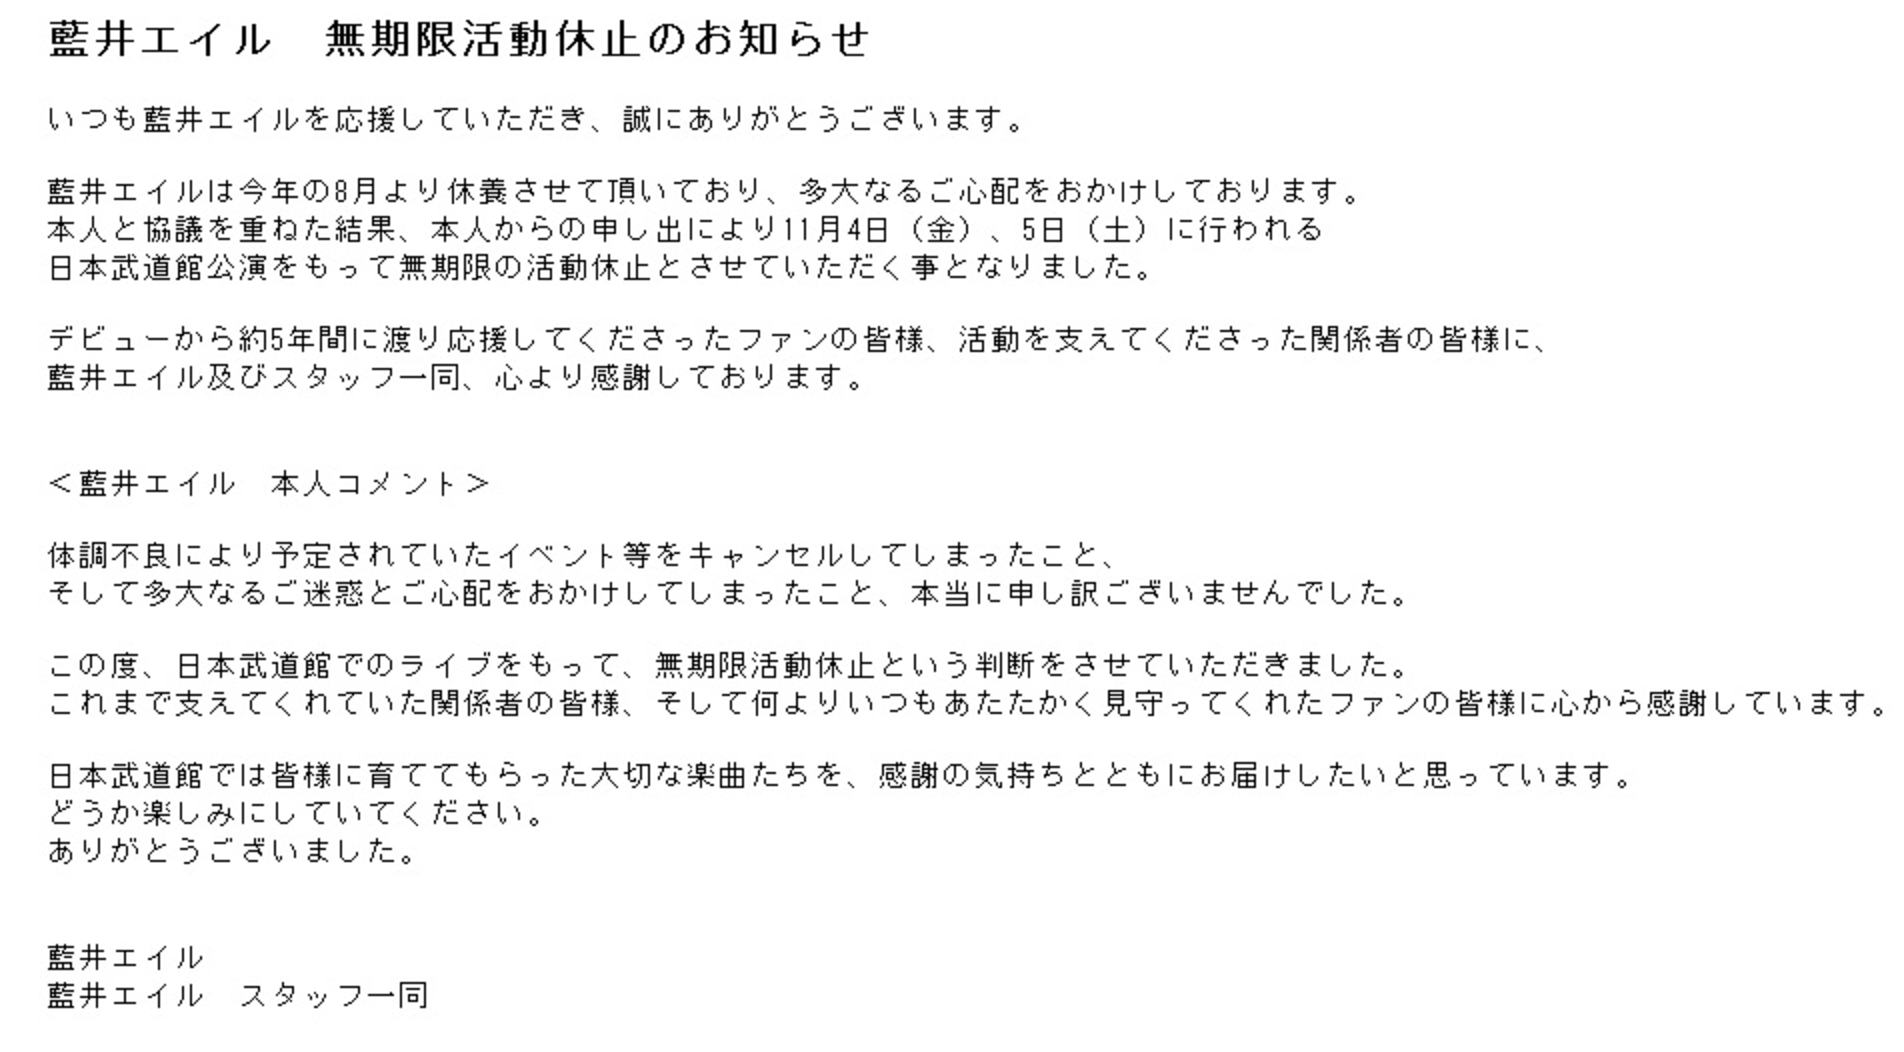 超人氣動漫歌手藍井艾露宣布暫退樂壇 無限期停止活動